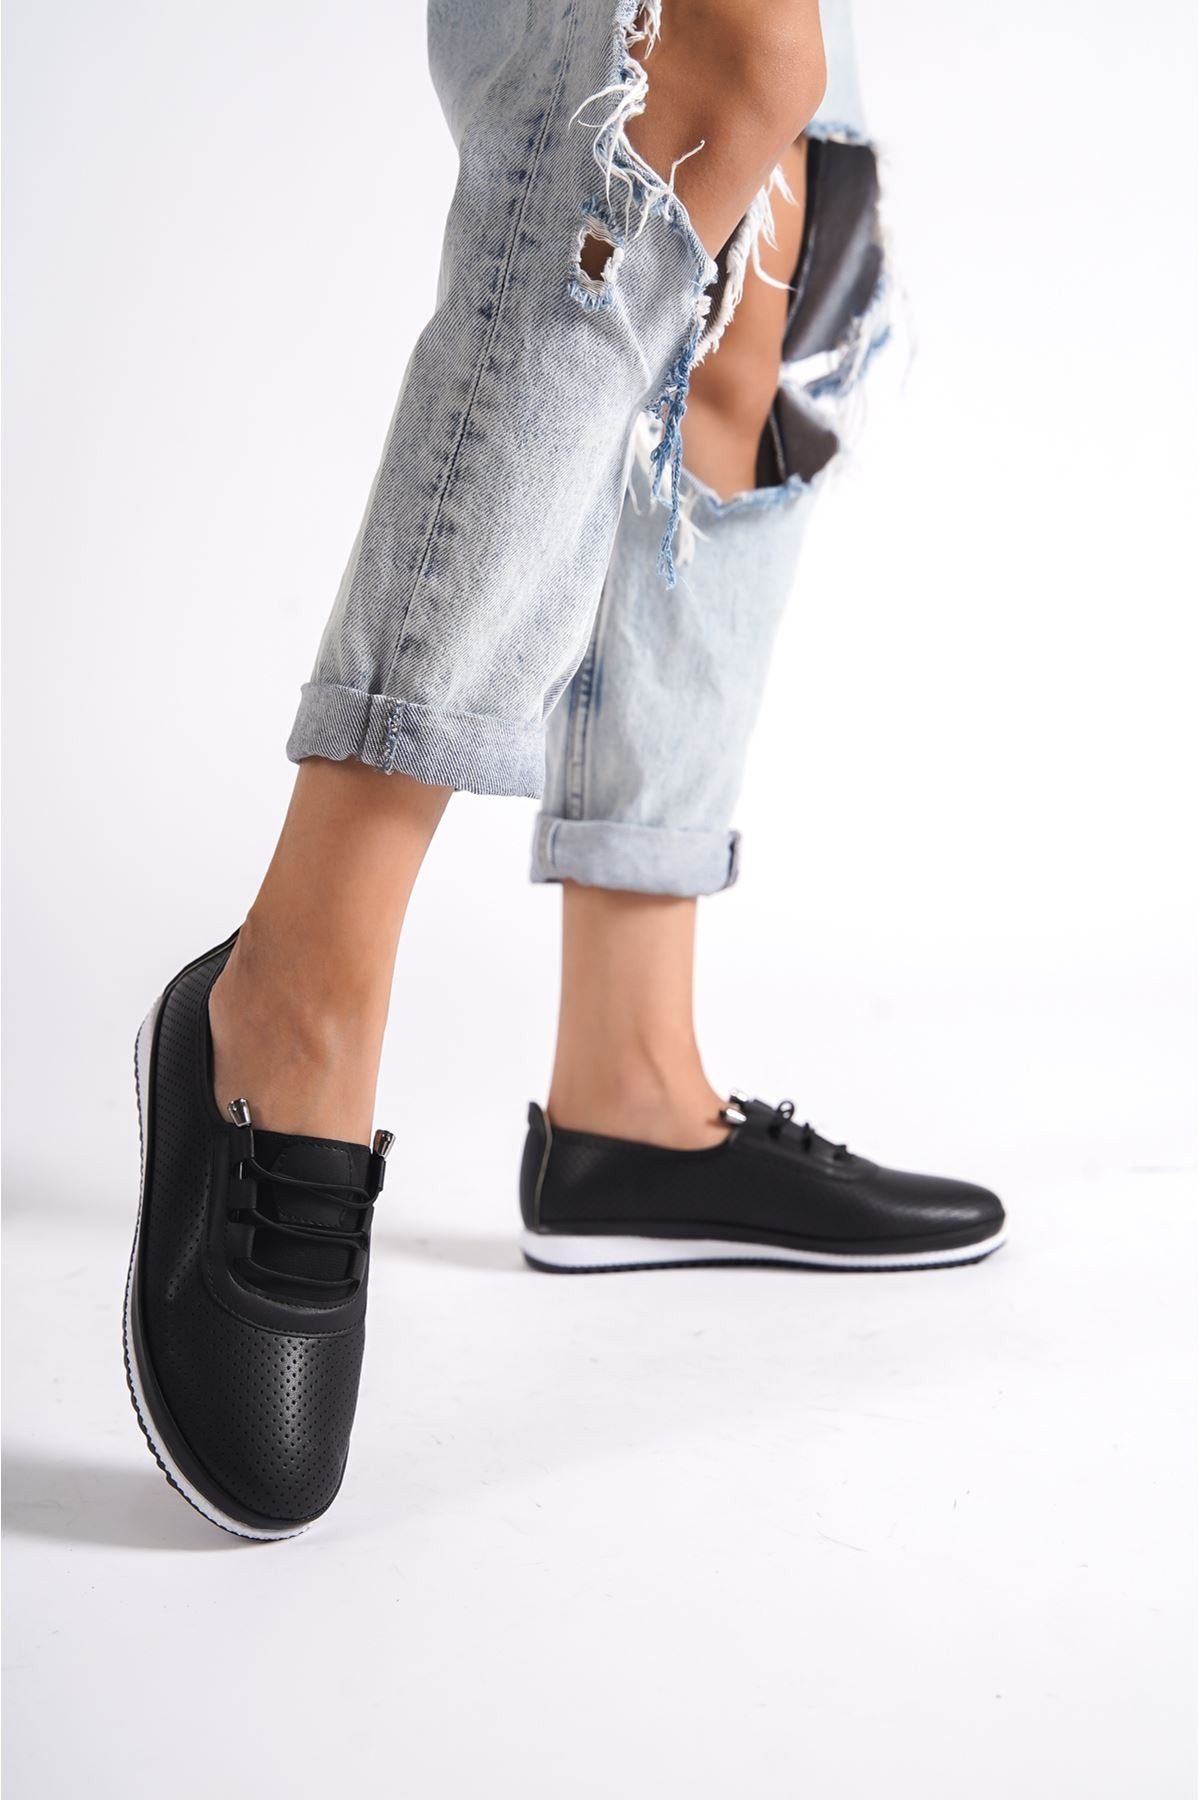 CLZ741 - Siyah Cilt Babet Ayakkabı